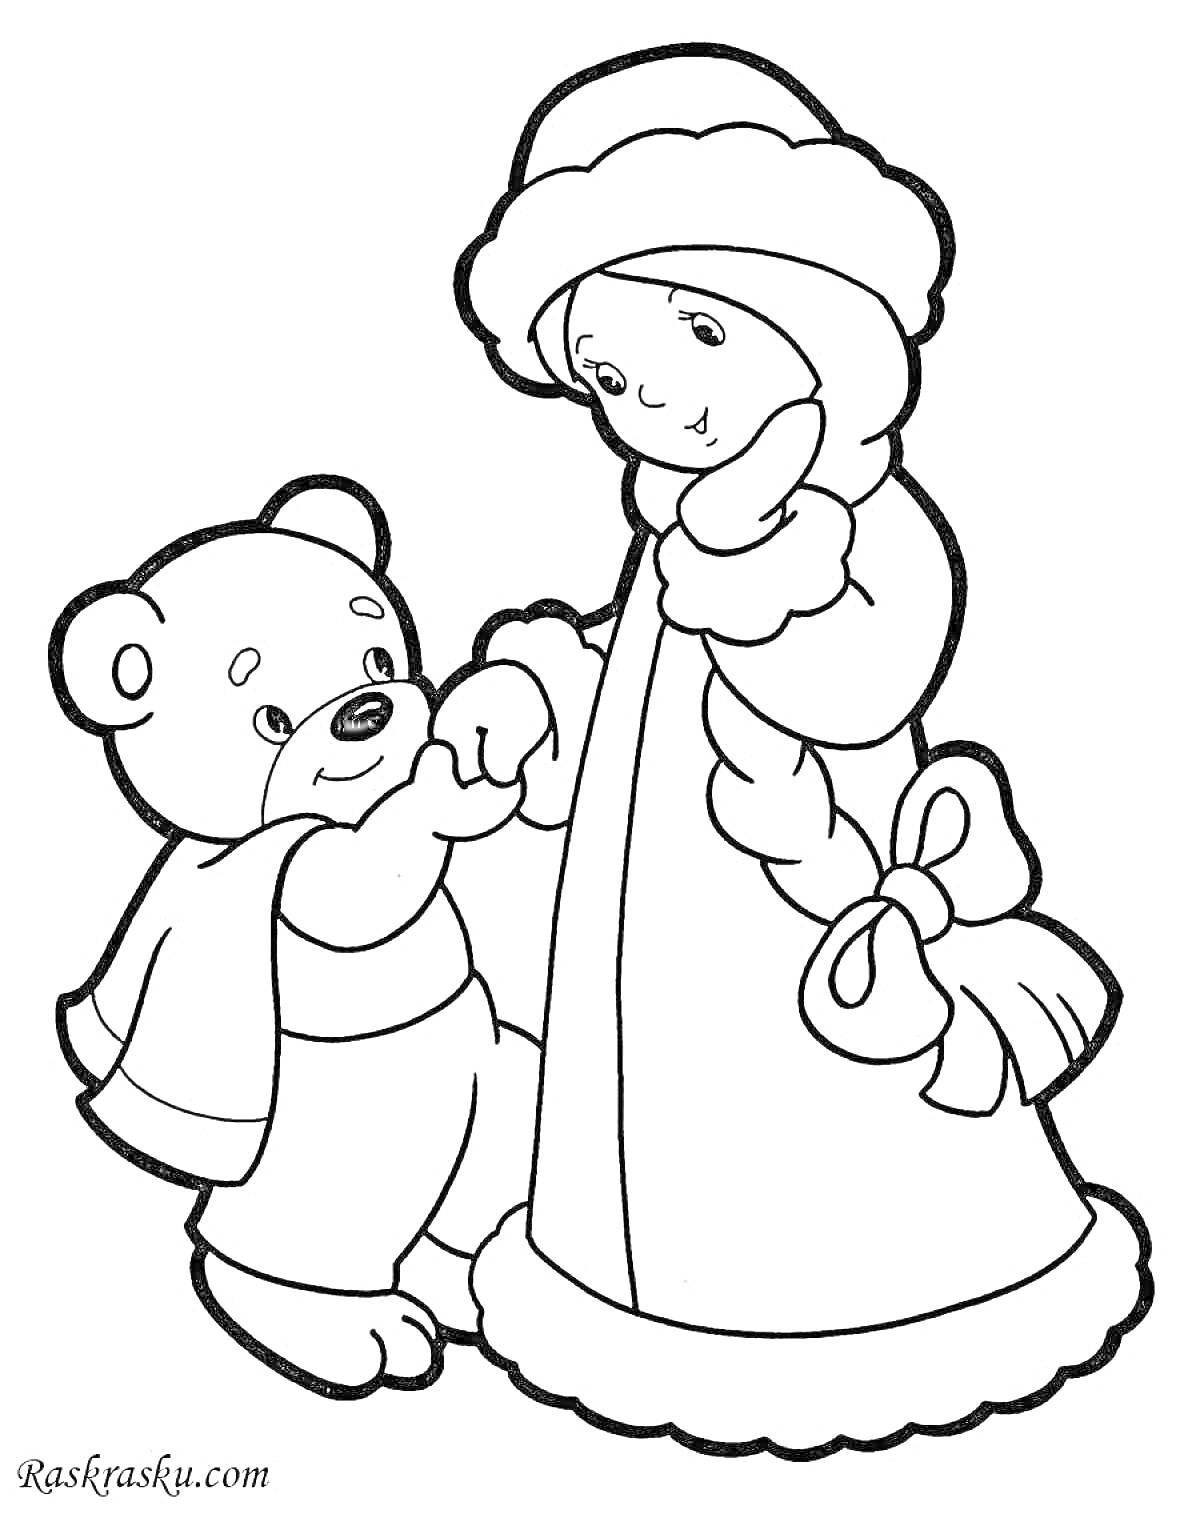 Снегурочка и медвежонок держатся за руки